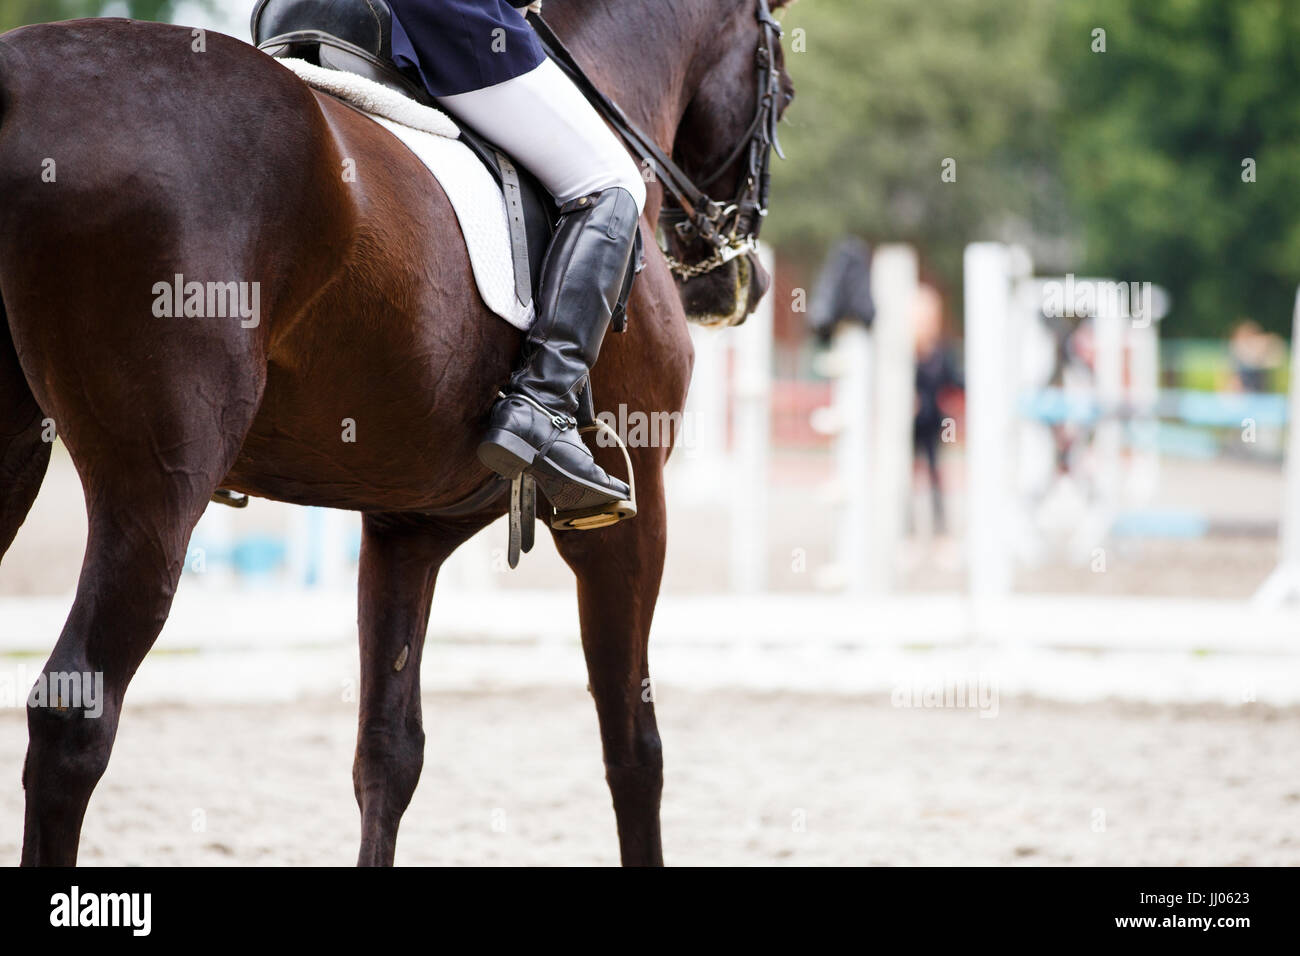 Chiudere l immagine del cavallo con pilota a dressage equestrian competizioni sportive. I dettagli delle attrezzature equestri Foto Stock